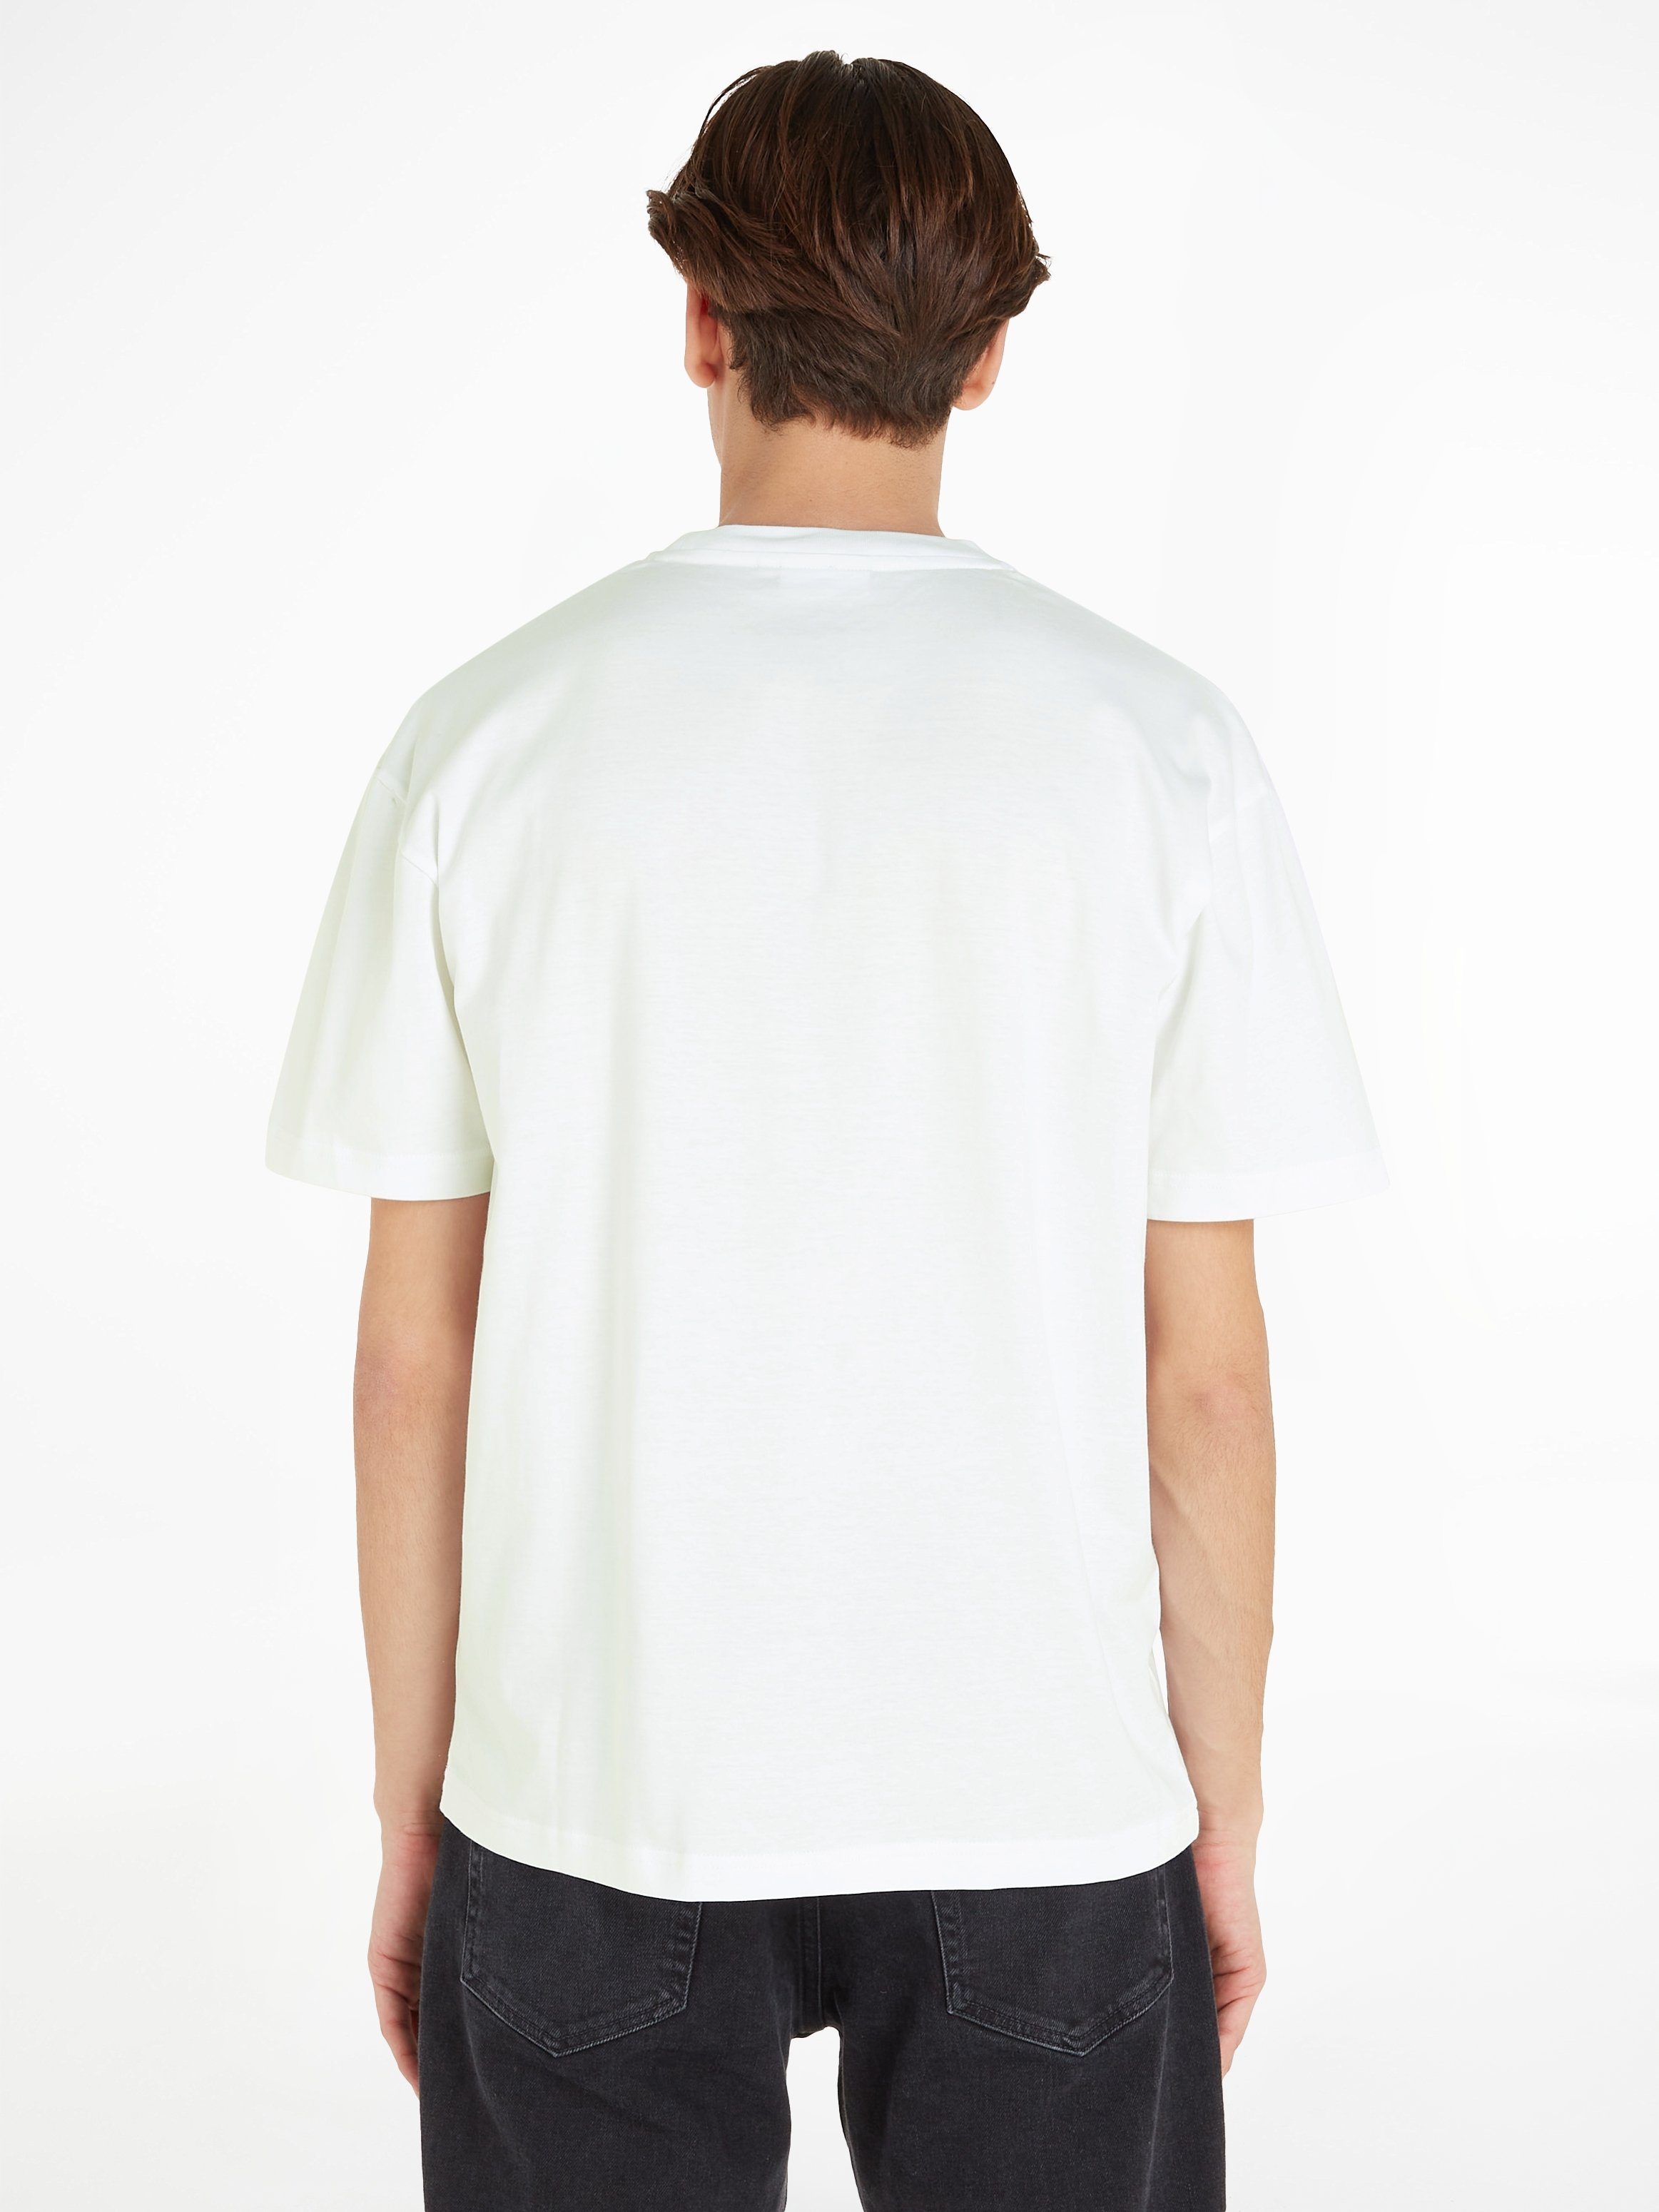 Calvin Klein COMFORT aufgedrucktem LOGO White HERO T-Shirt T-SHIRT mit Markenlabel Bright